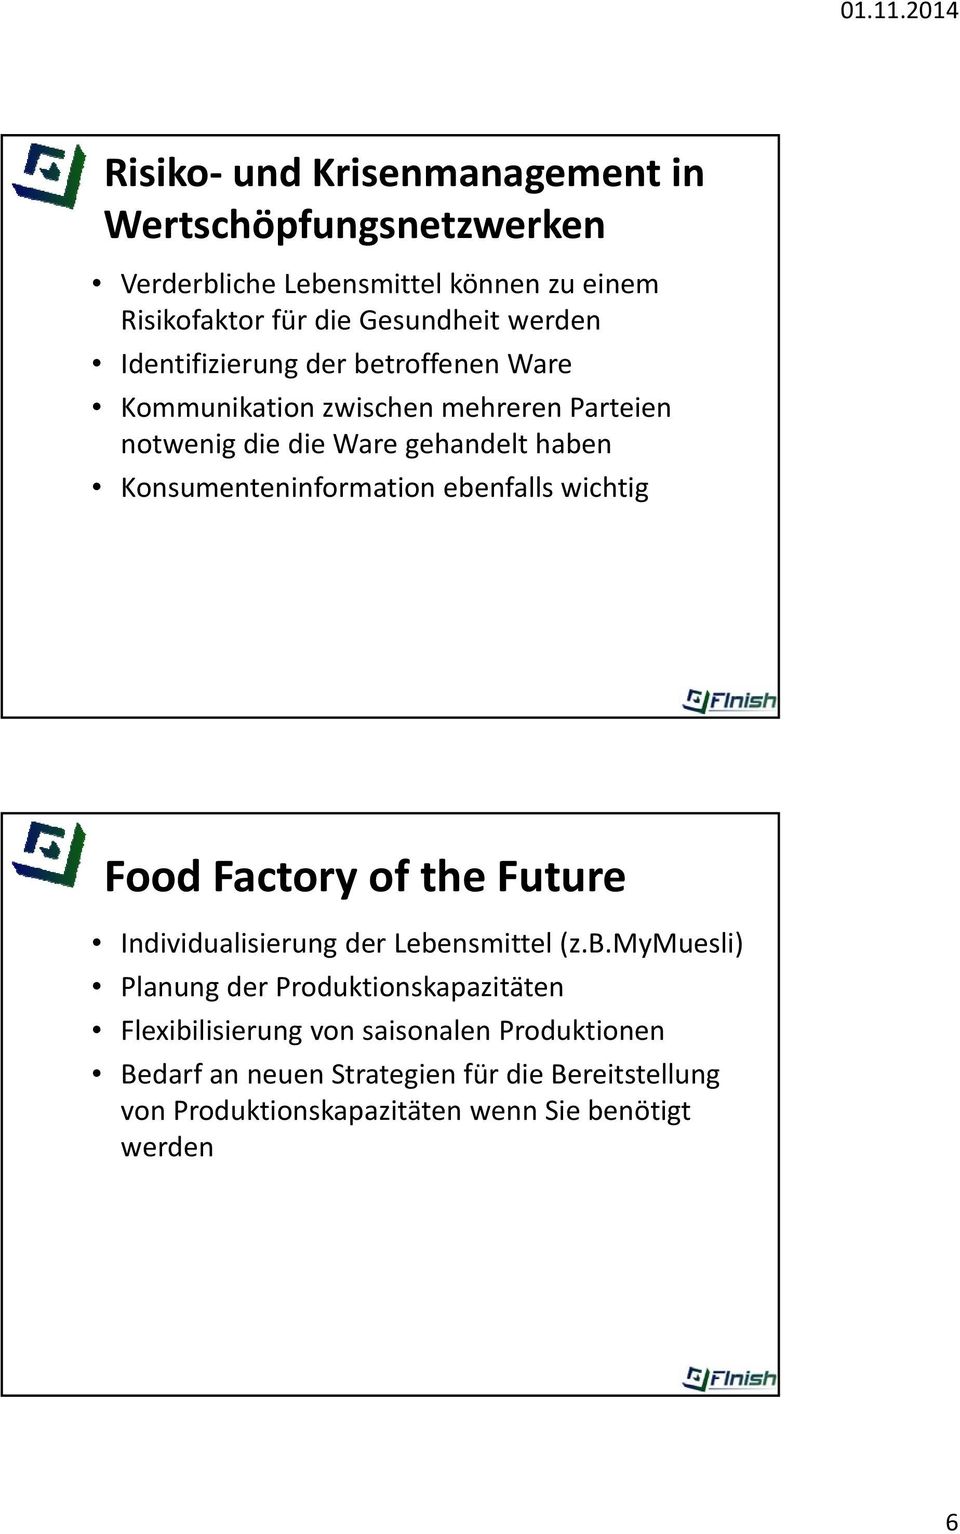 ebenfalls wichtig Food Factory of the Future Individualisierung der Lebensmittel (z.b.mymuesli) Planung der Produktionskapazitäten